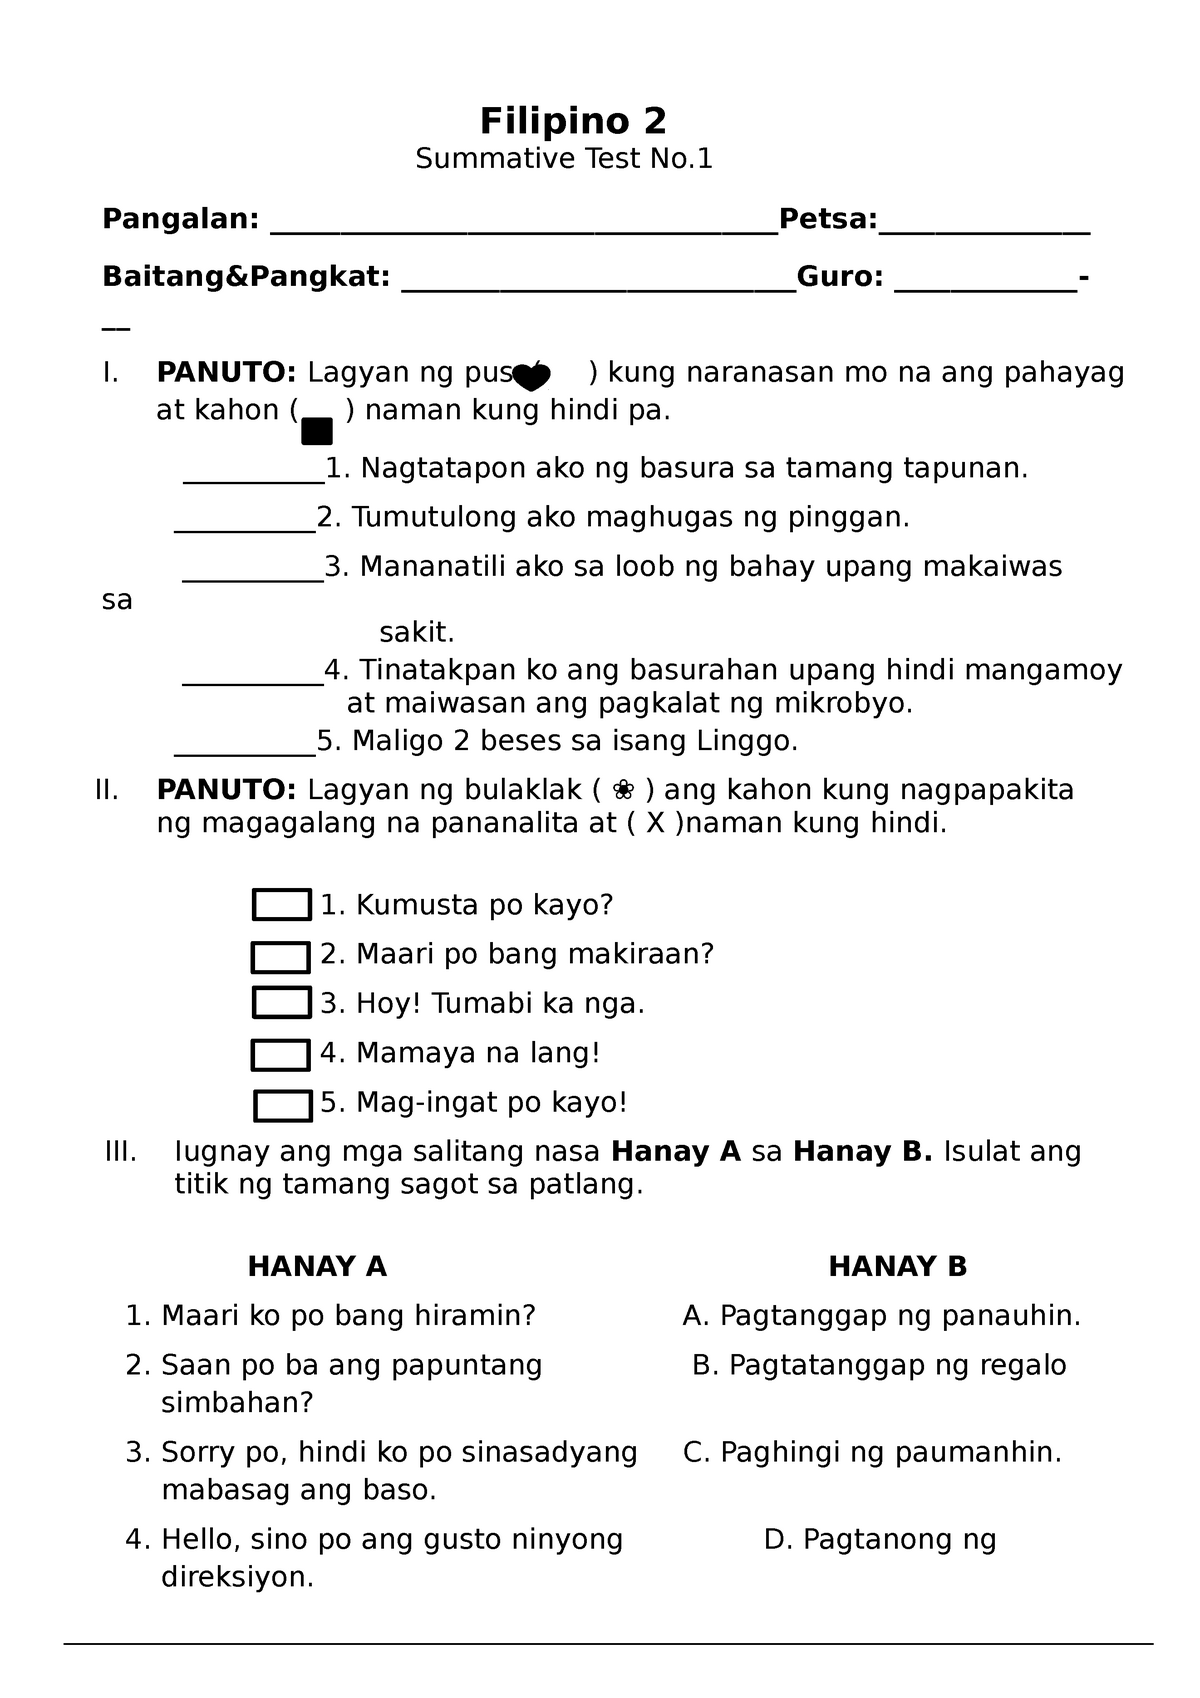 Q1 Filipino 2 Summative 1 - Filipino 2 Summative Test No. Pangalan